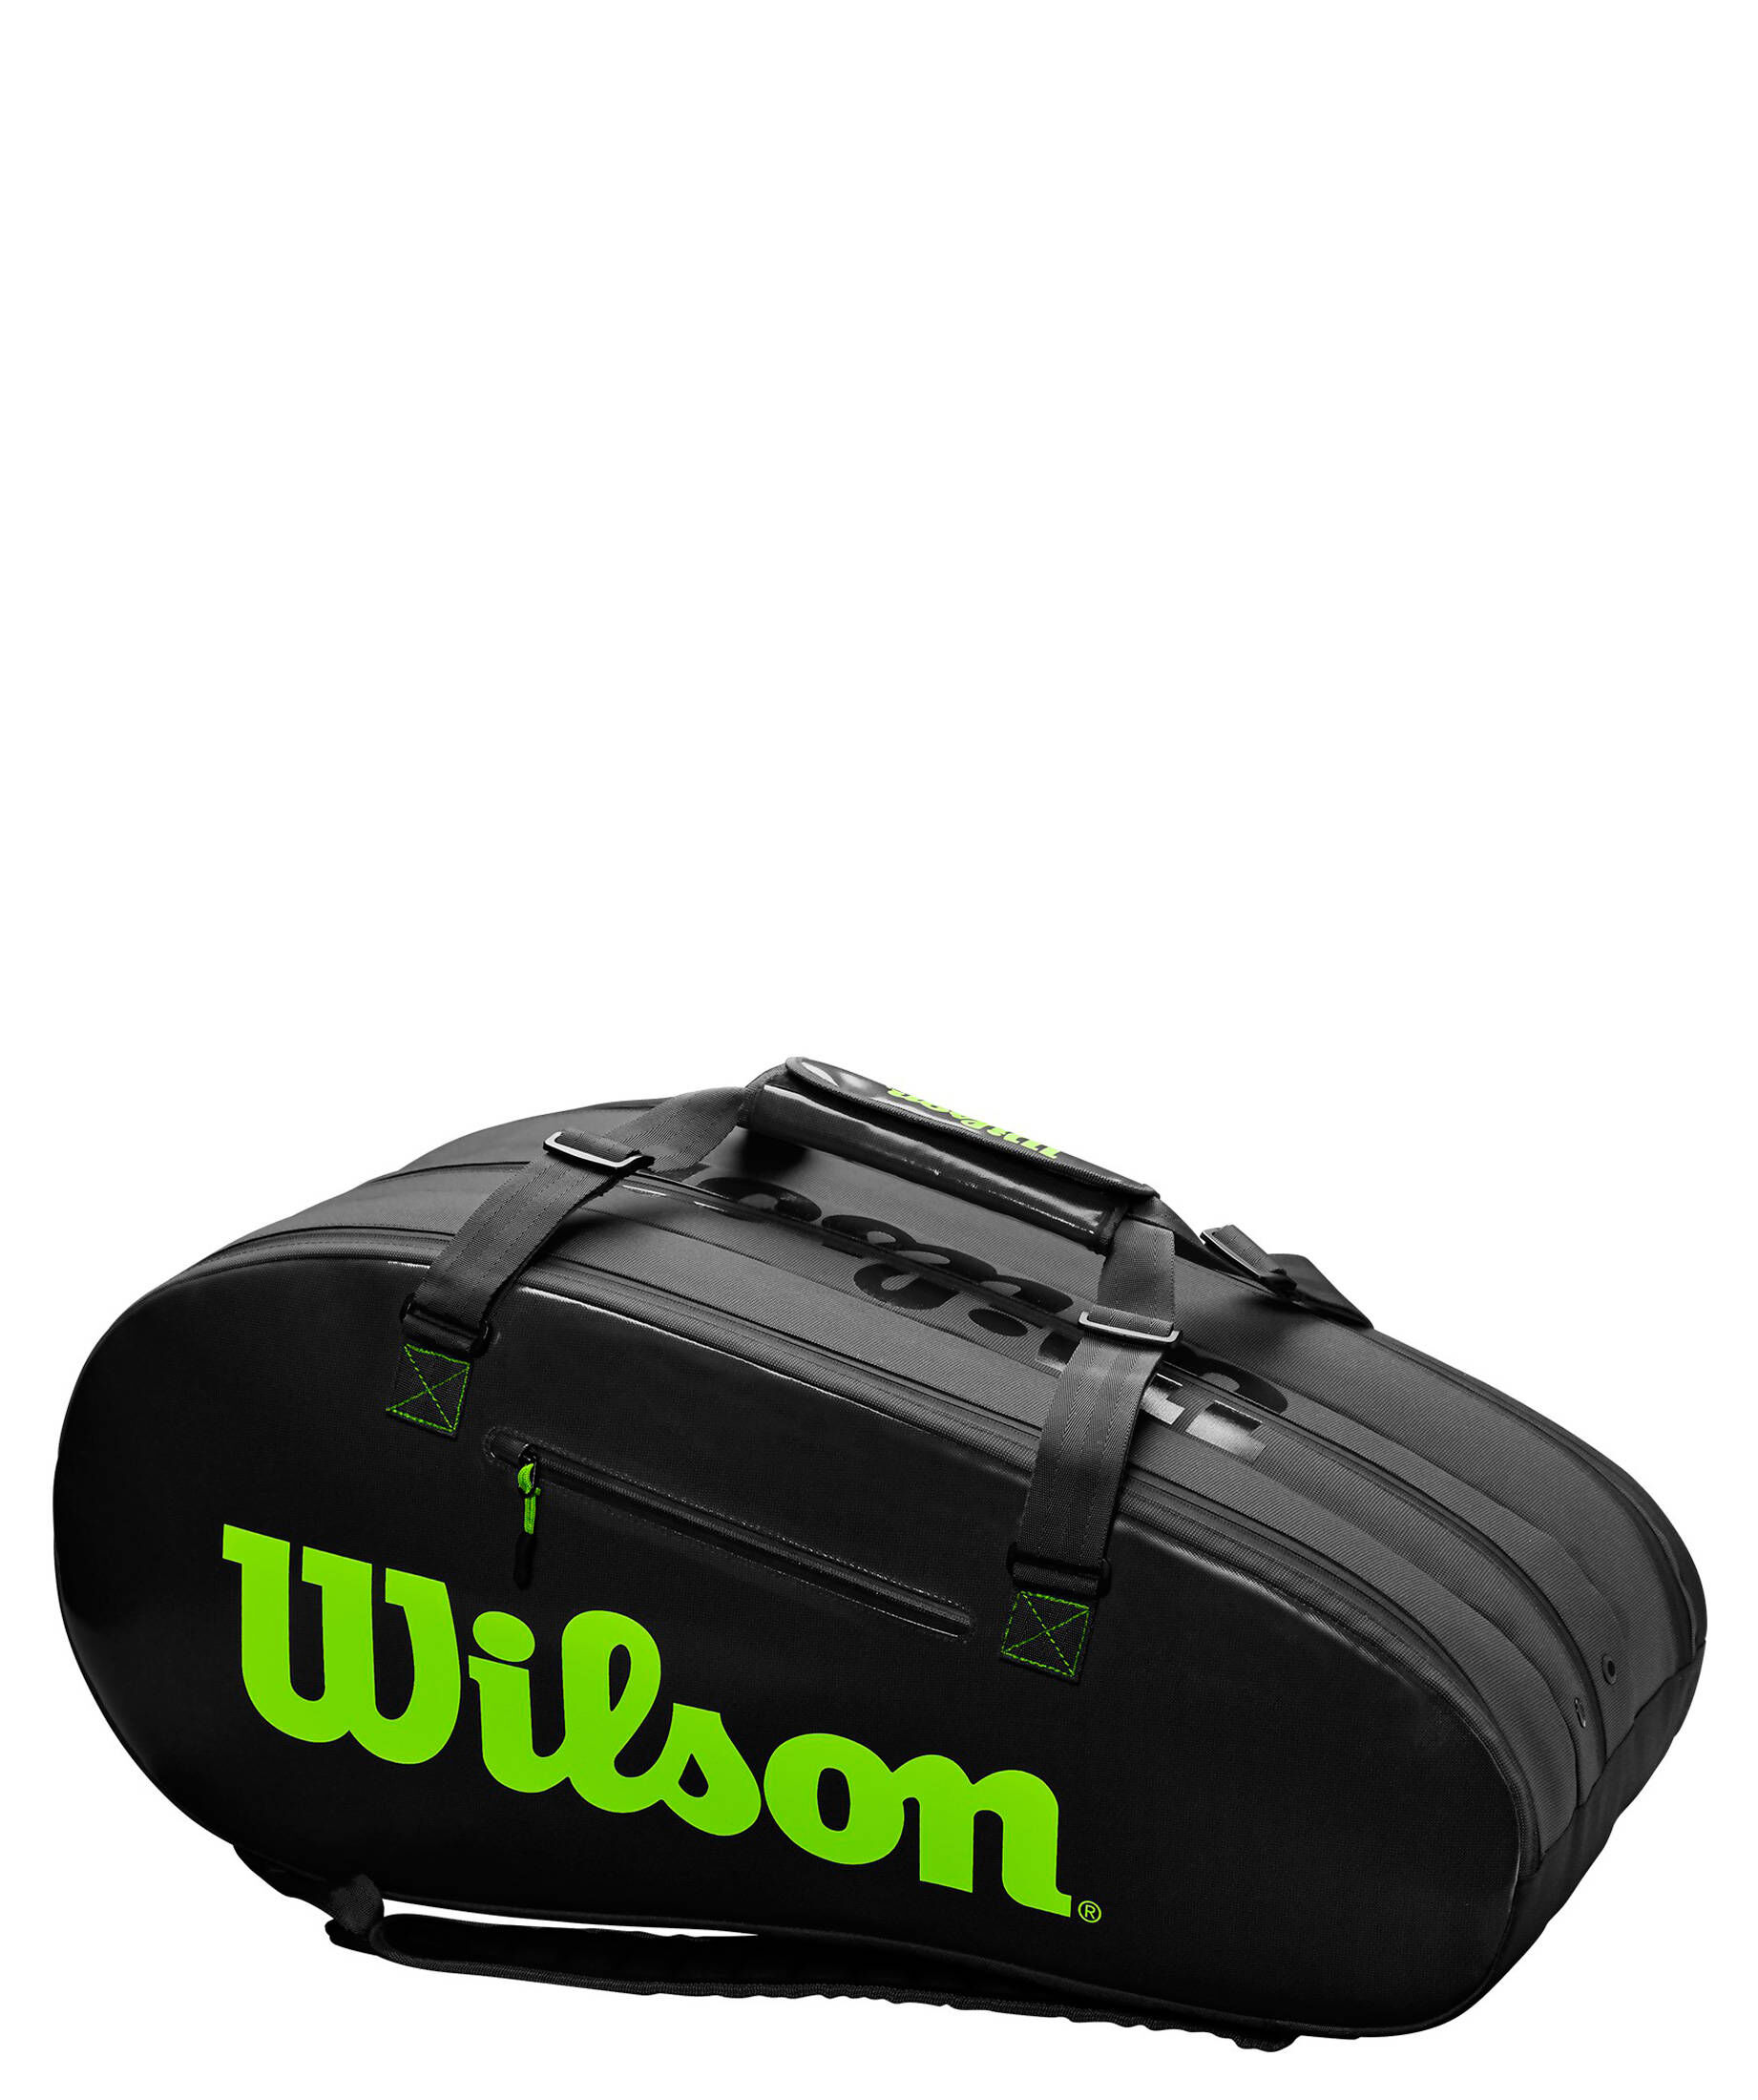 Wilson Tour 3 Comp Tennistasche schwarz Racketbag UVP 100,00€ NEU 